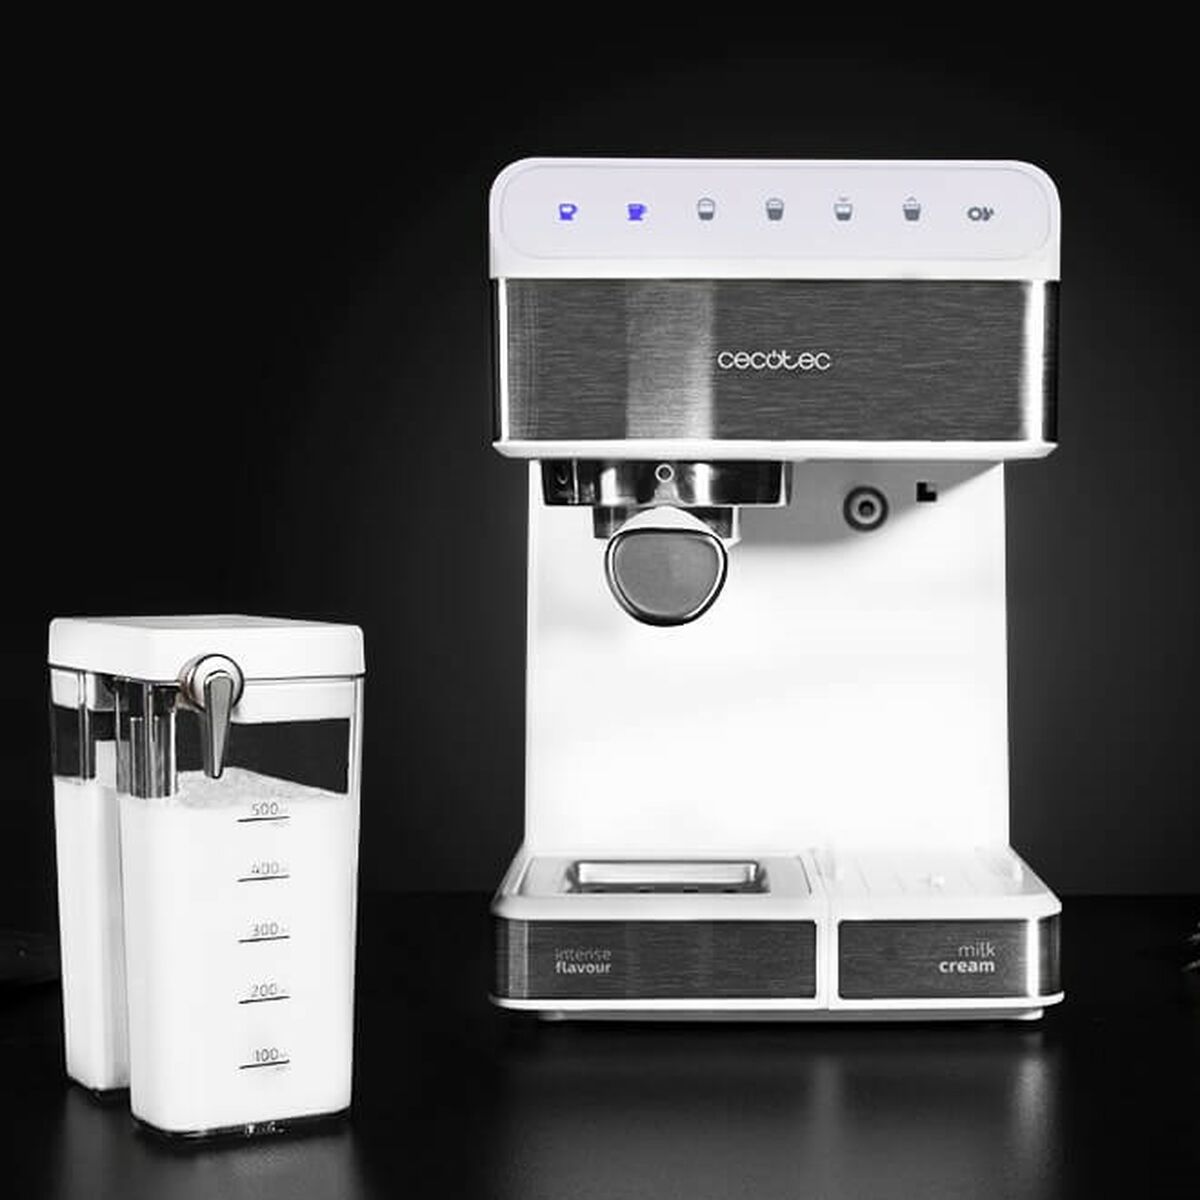 Machine de café manuelle express Cecotec 1350W 1,4 L blanc 1,4 L